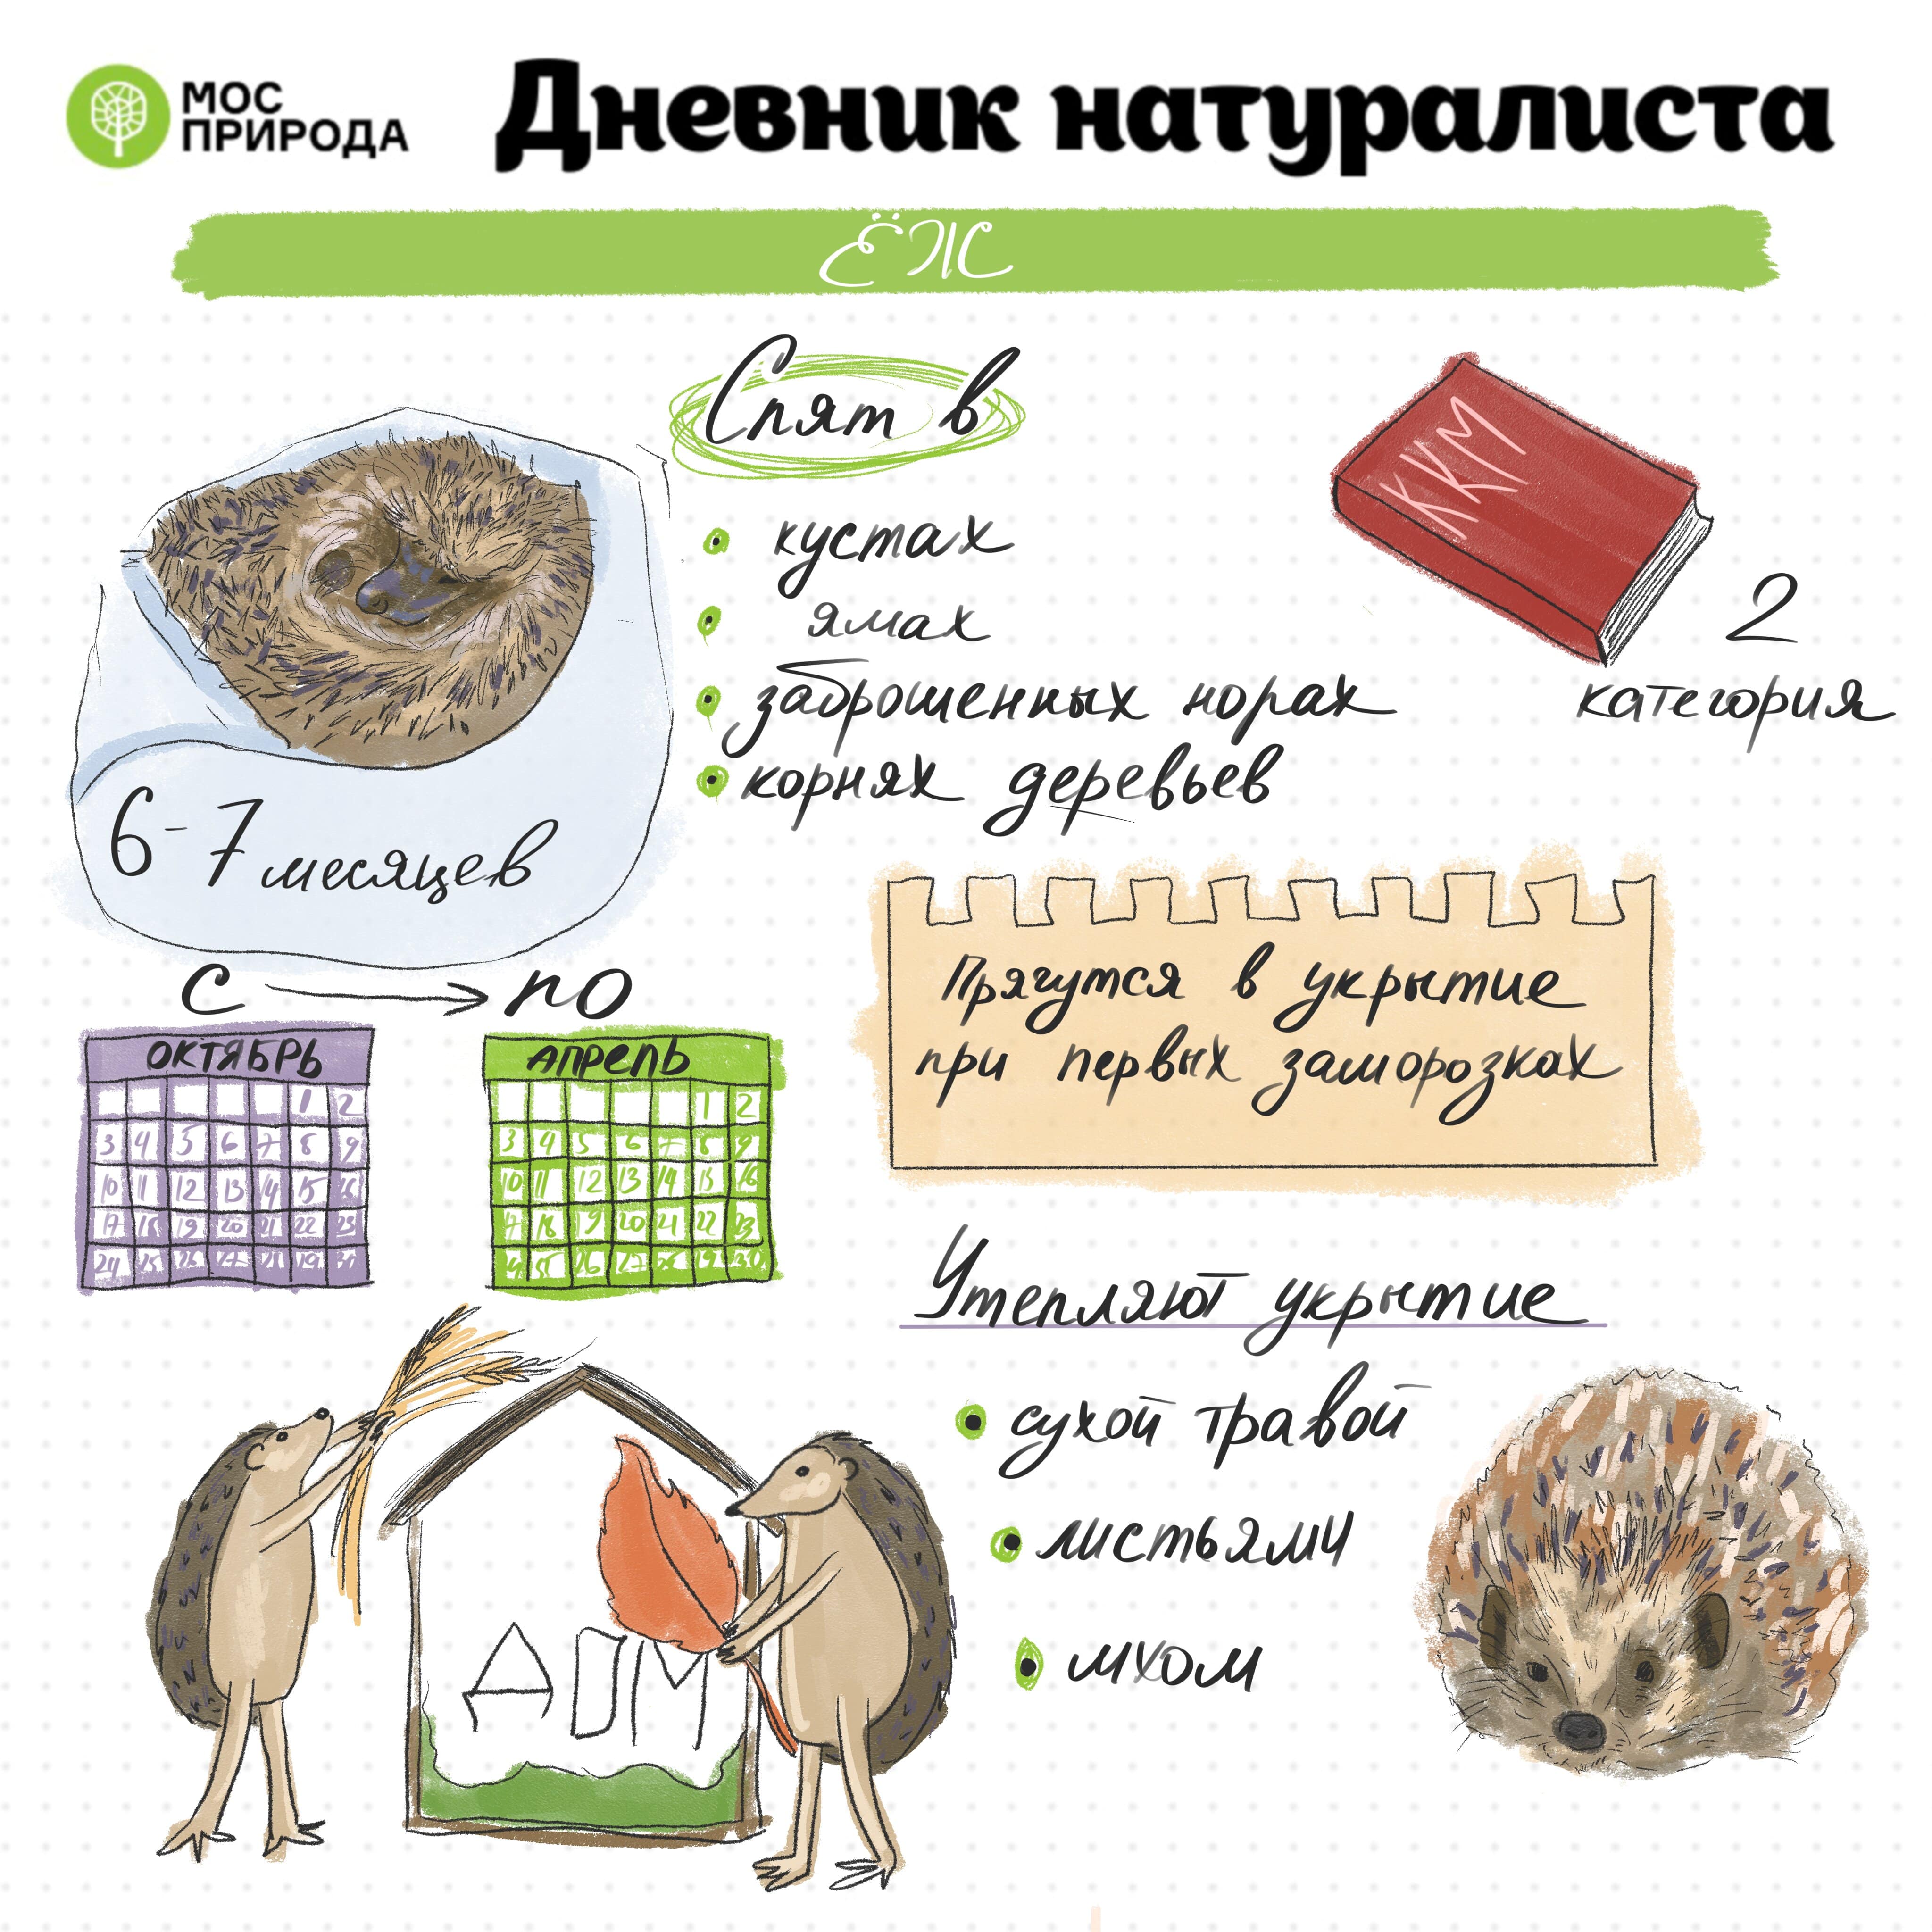 «Дневник натуралиста»: в сентябре участники изучат соней Москвы - фото 1